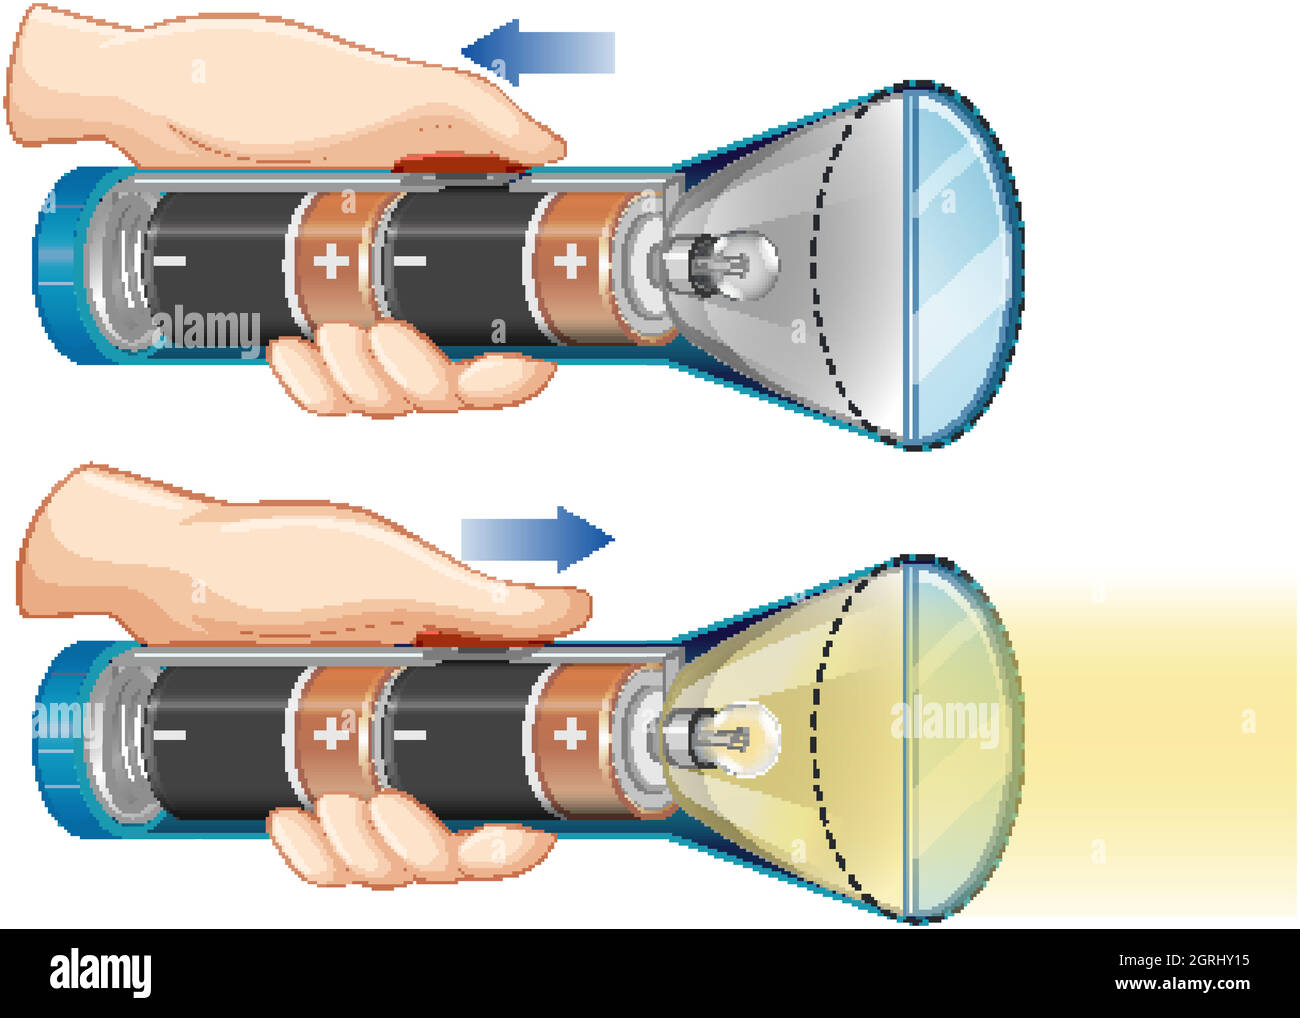 Schéma illustrant la manière dont les batteries créent de la lumière Illustration de Vecteur